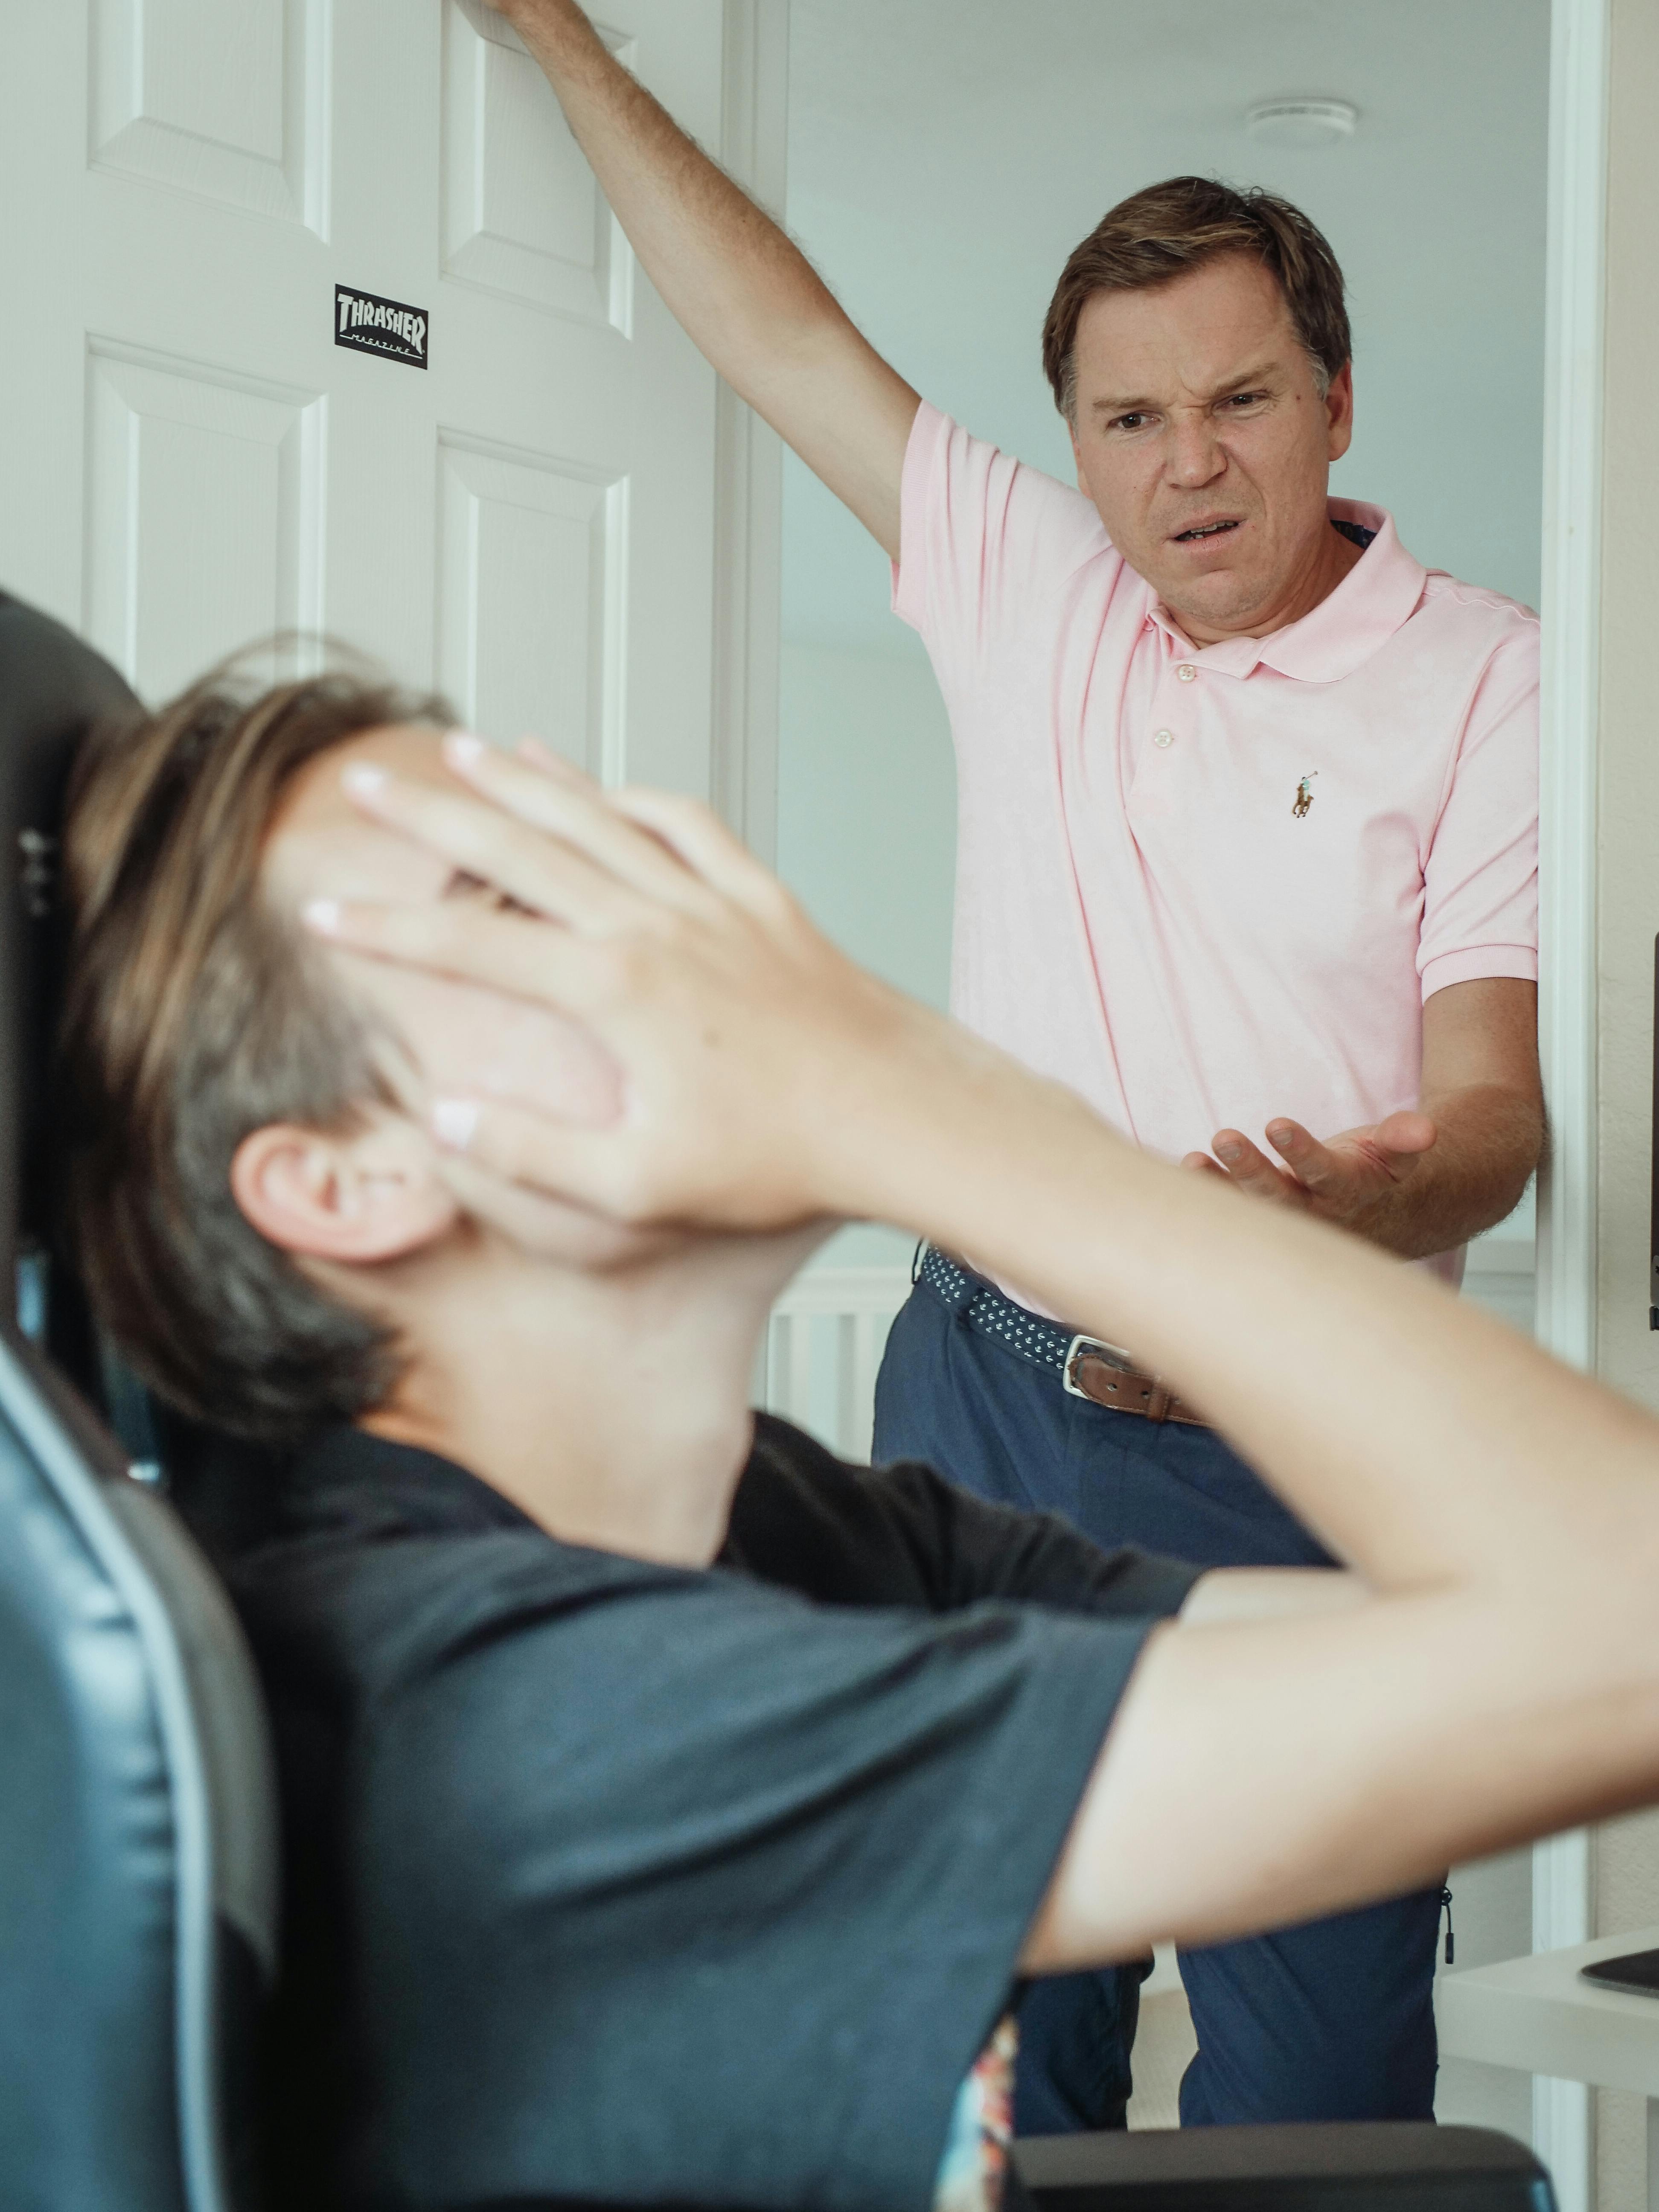 Un père en colère | Source : Pexels